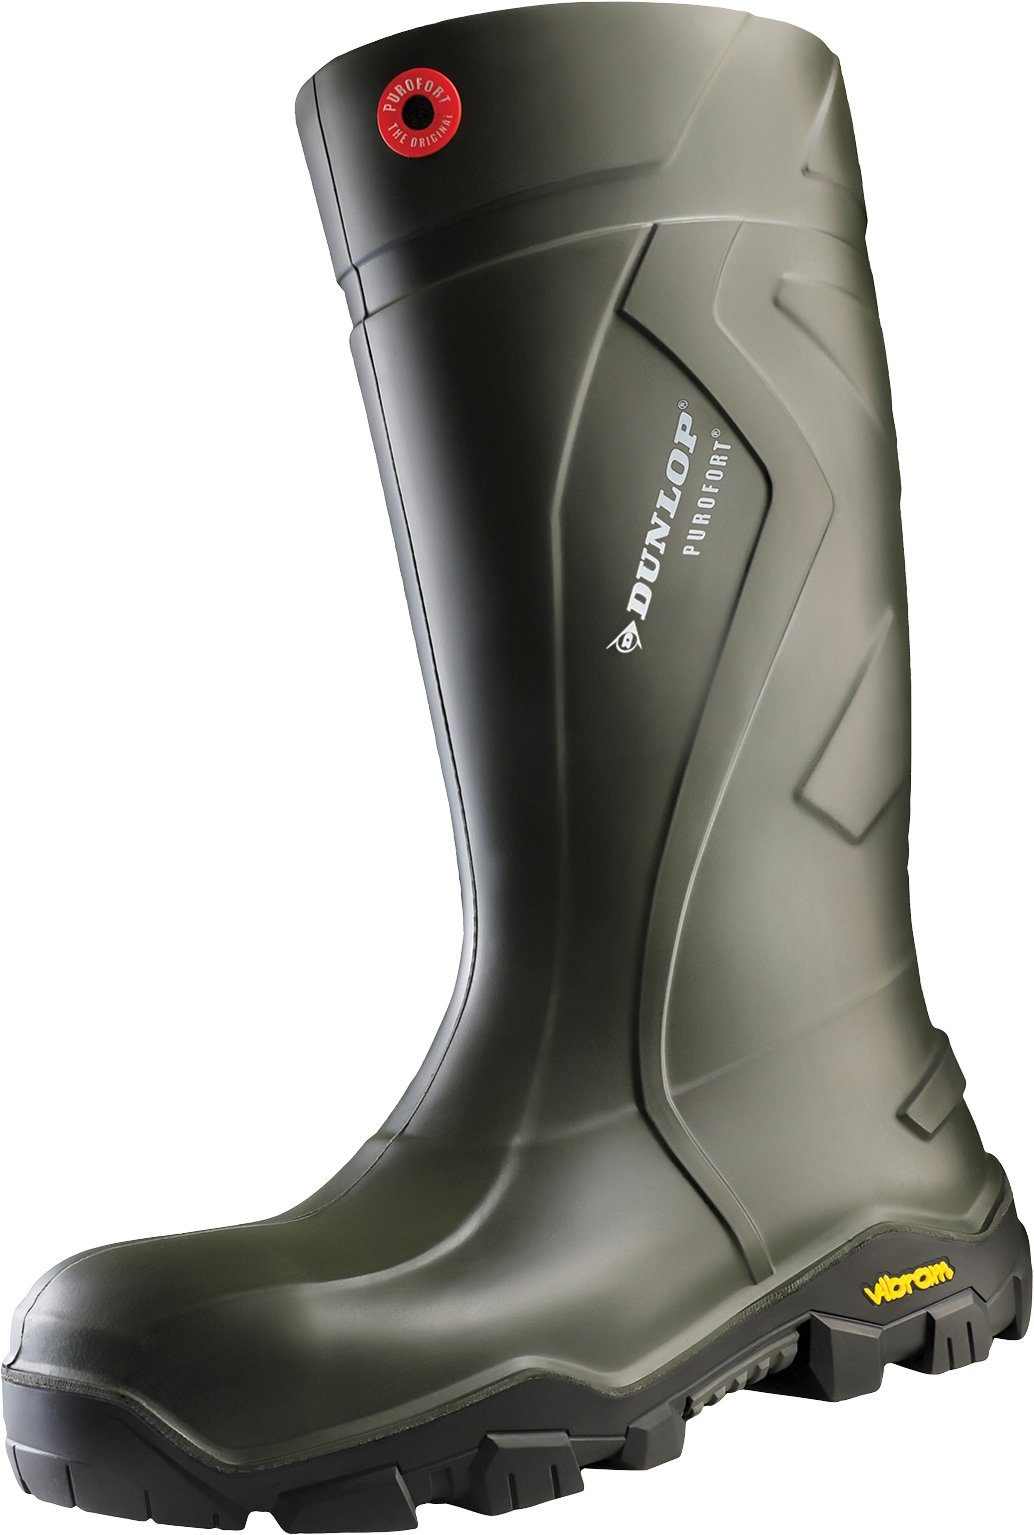 Schuhe Gummistiefel Dunlop_Workwear Purofort® + Outlander full safety with Vibram® Gummistiefel Sicherheitsklasse S5